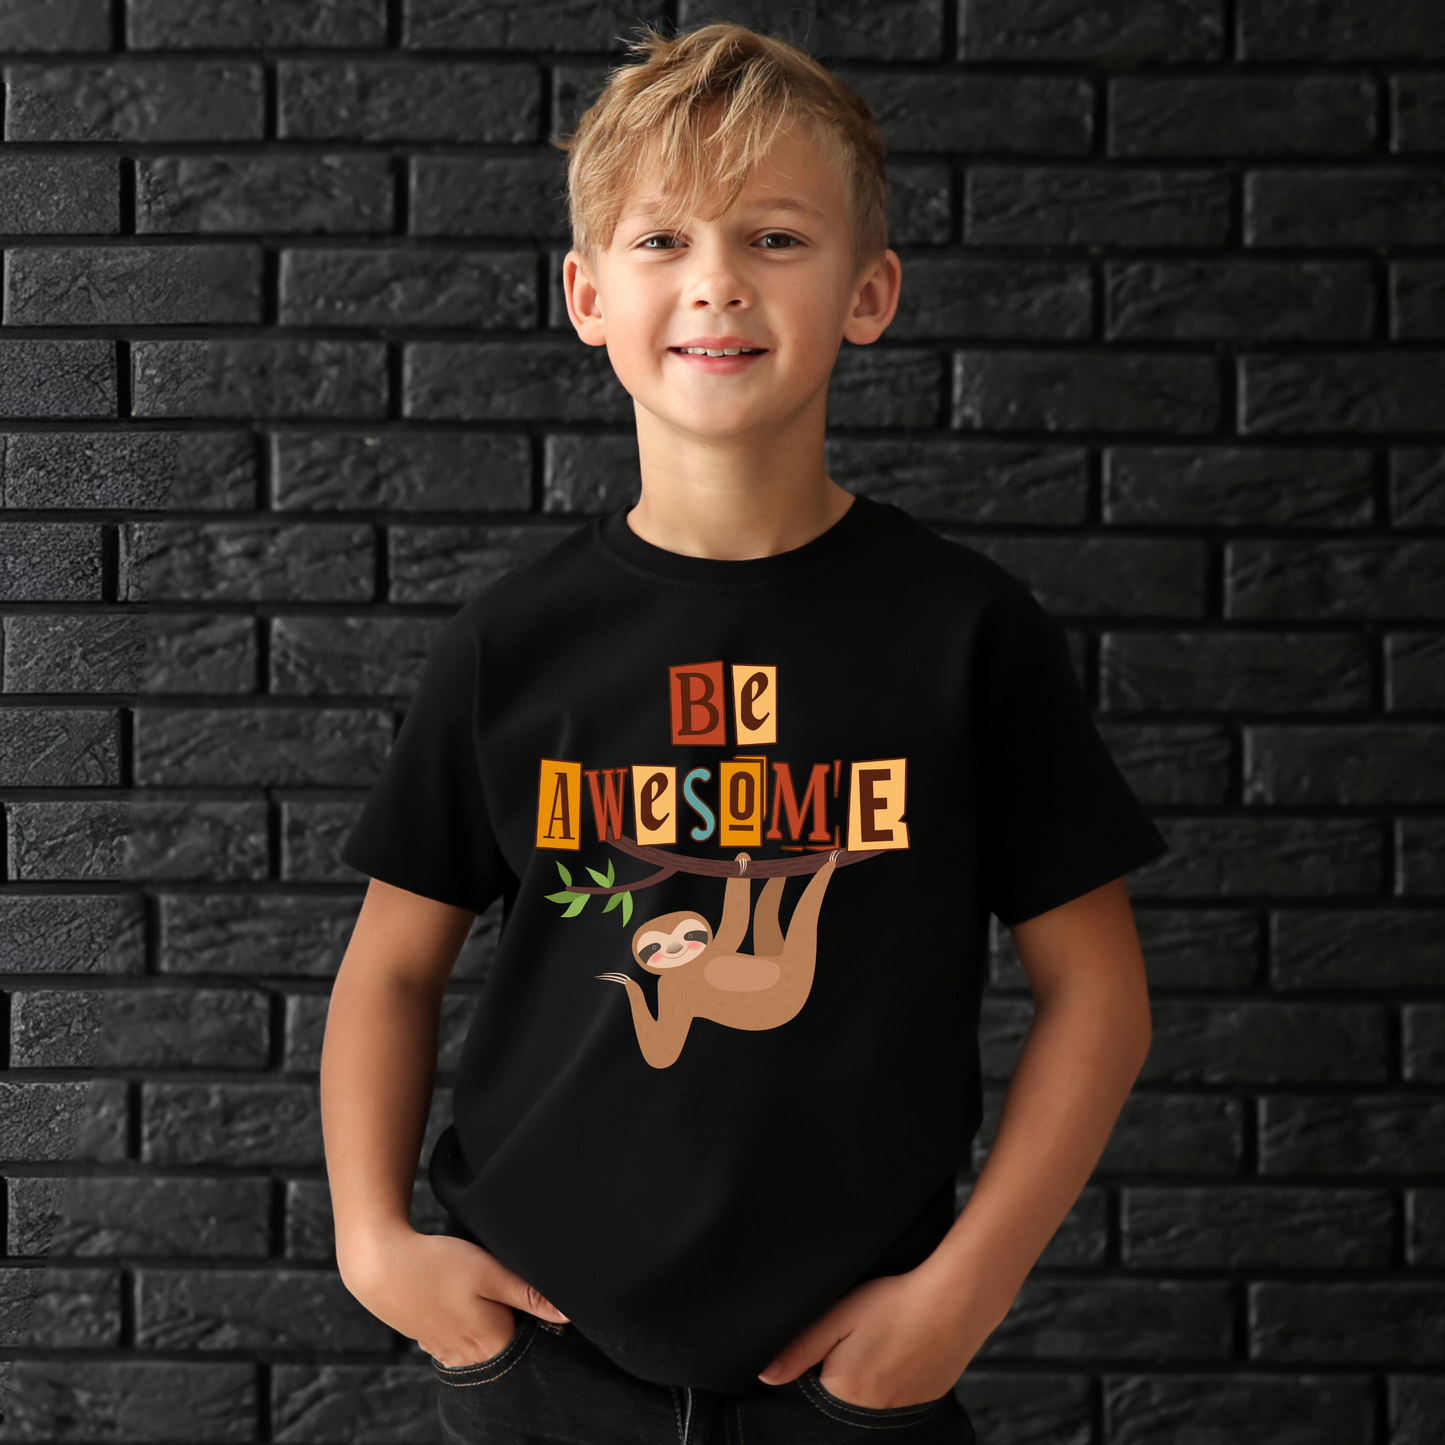 Boys Graphic Printed T-shirt- Black